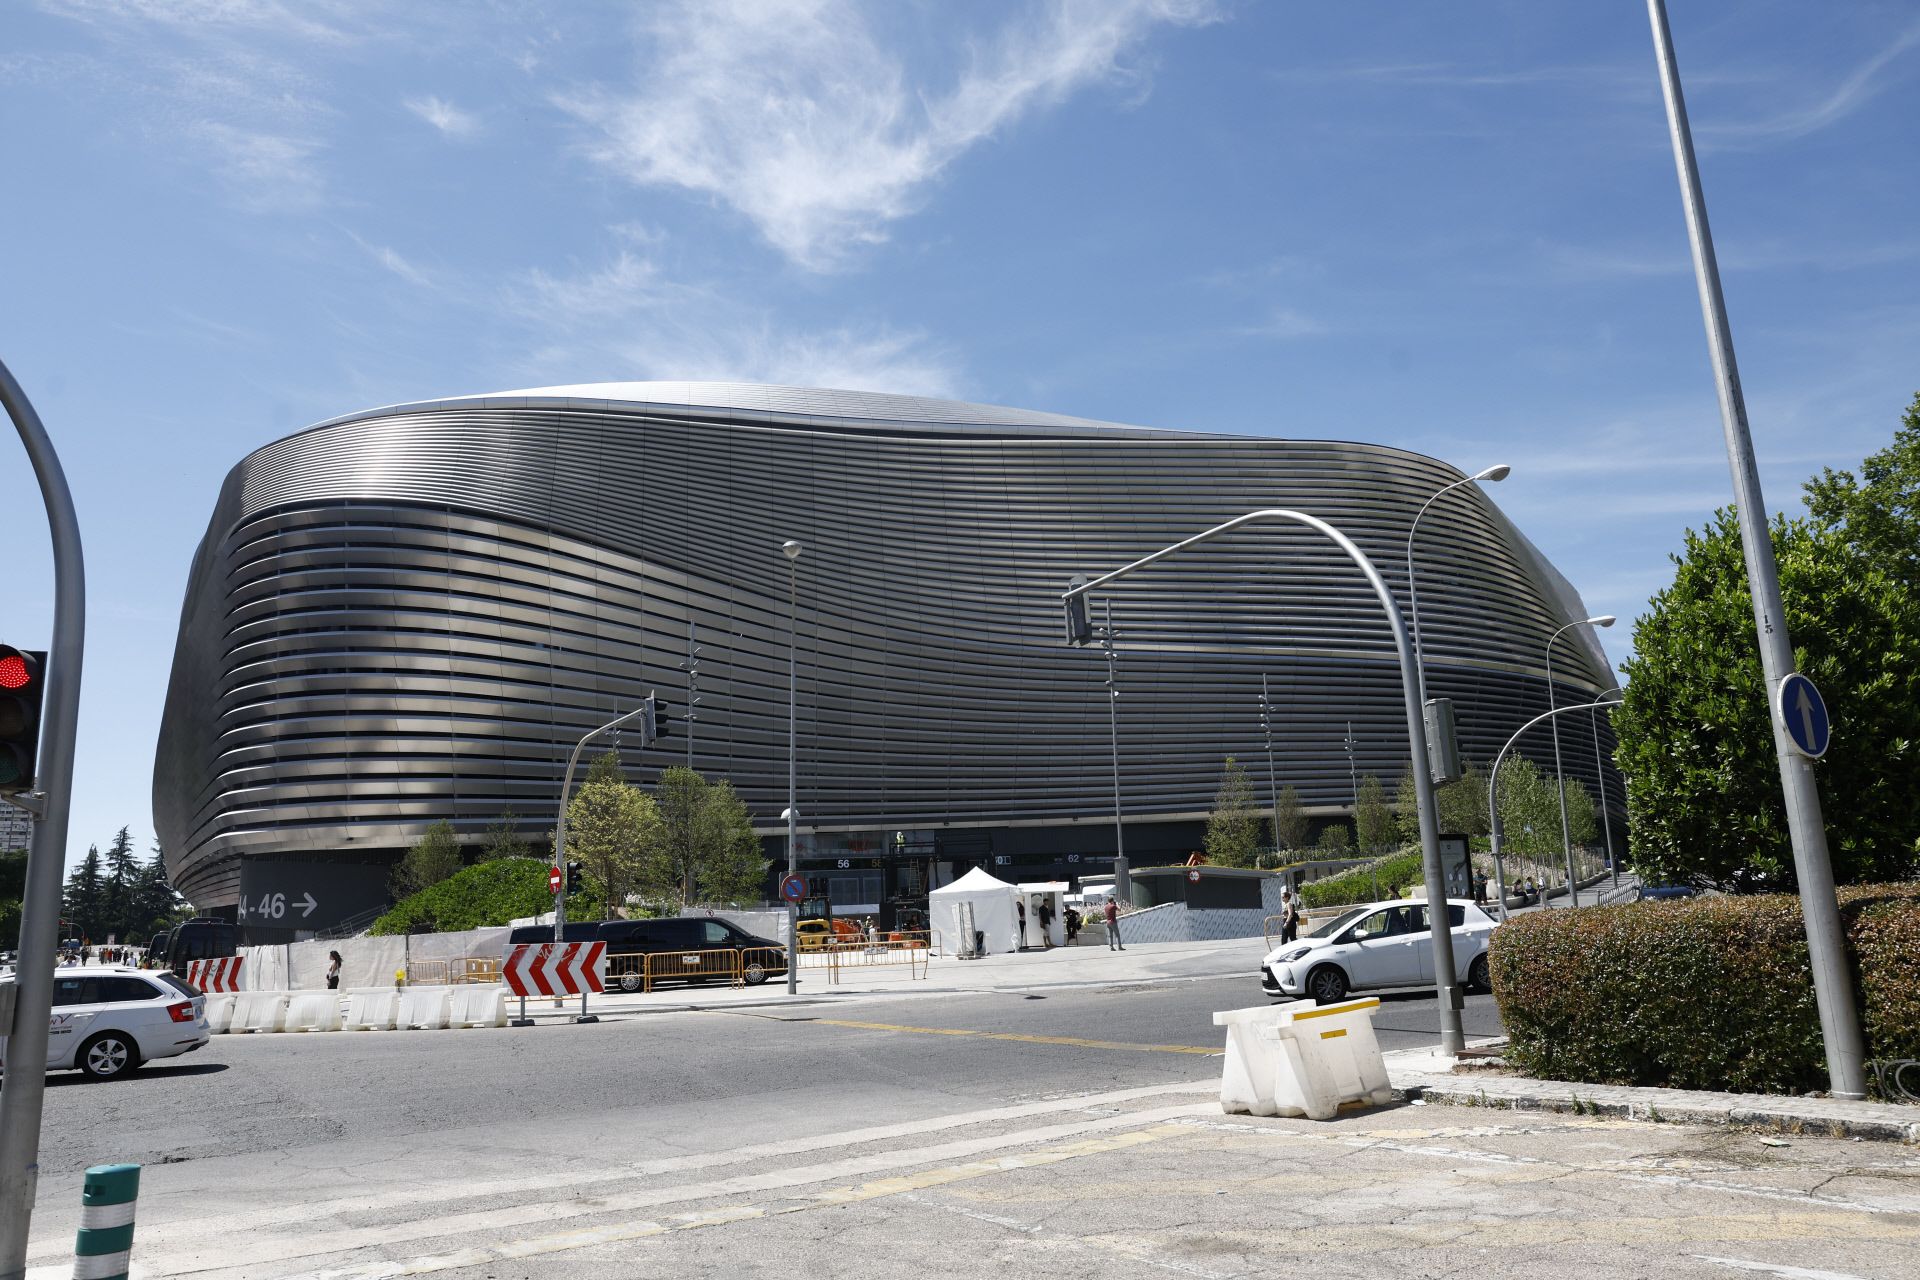 El estadio Santiago Bernabeu se prepara para el concierto de Taylro Swift